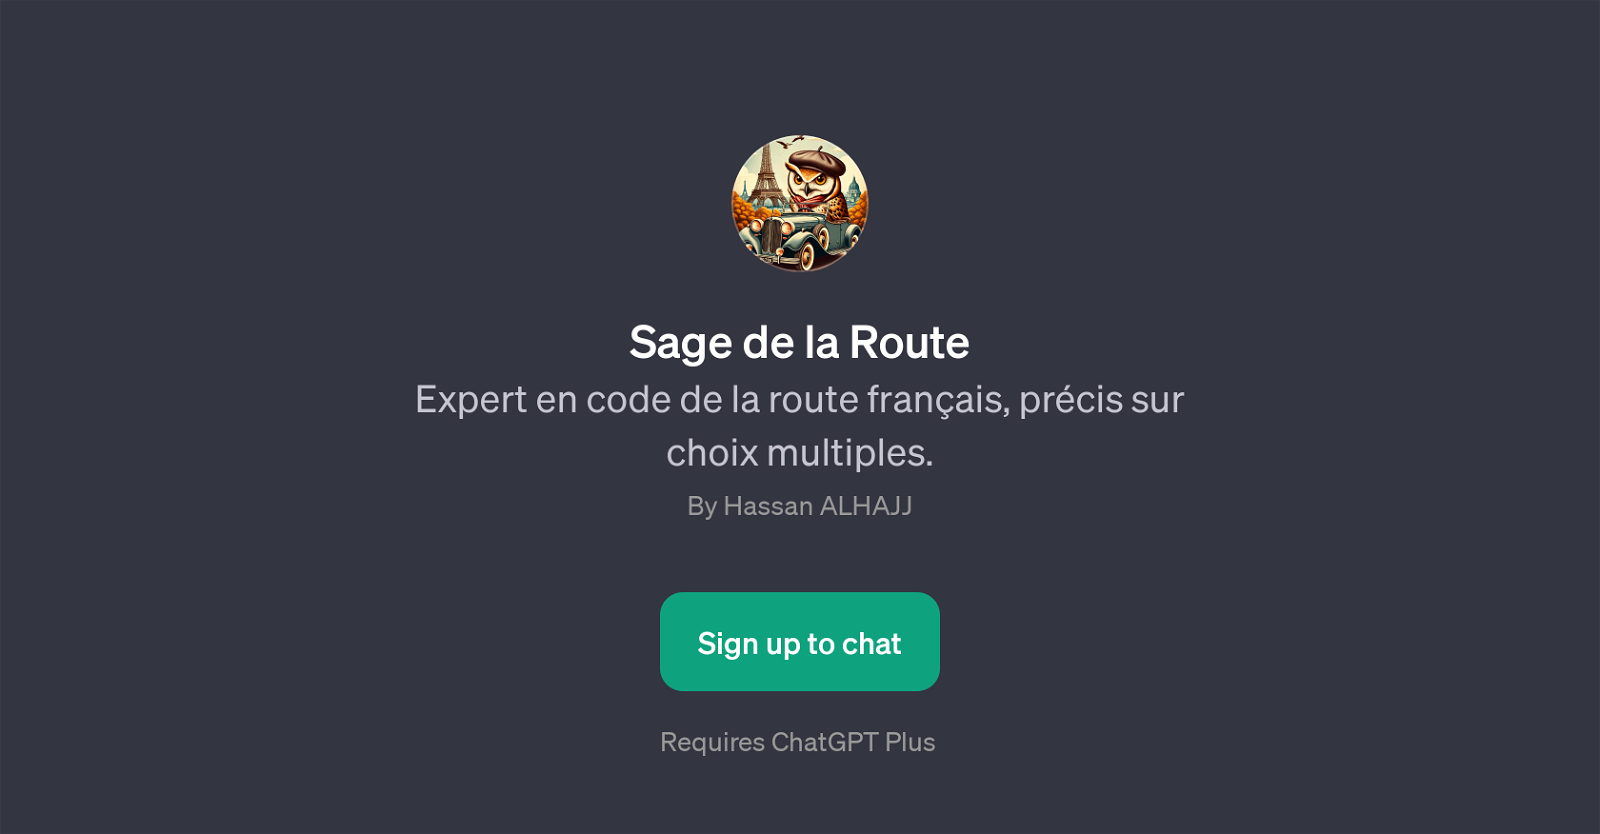 Sage de la Route website